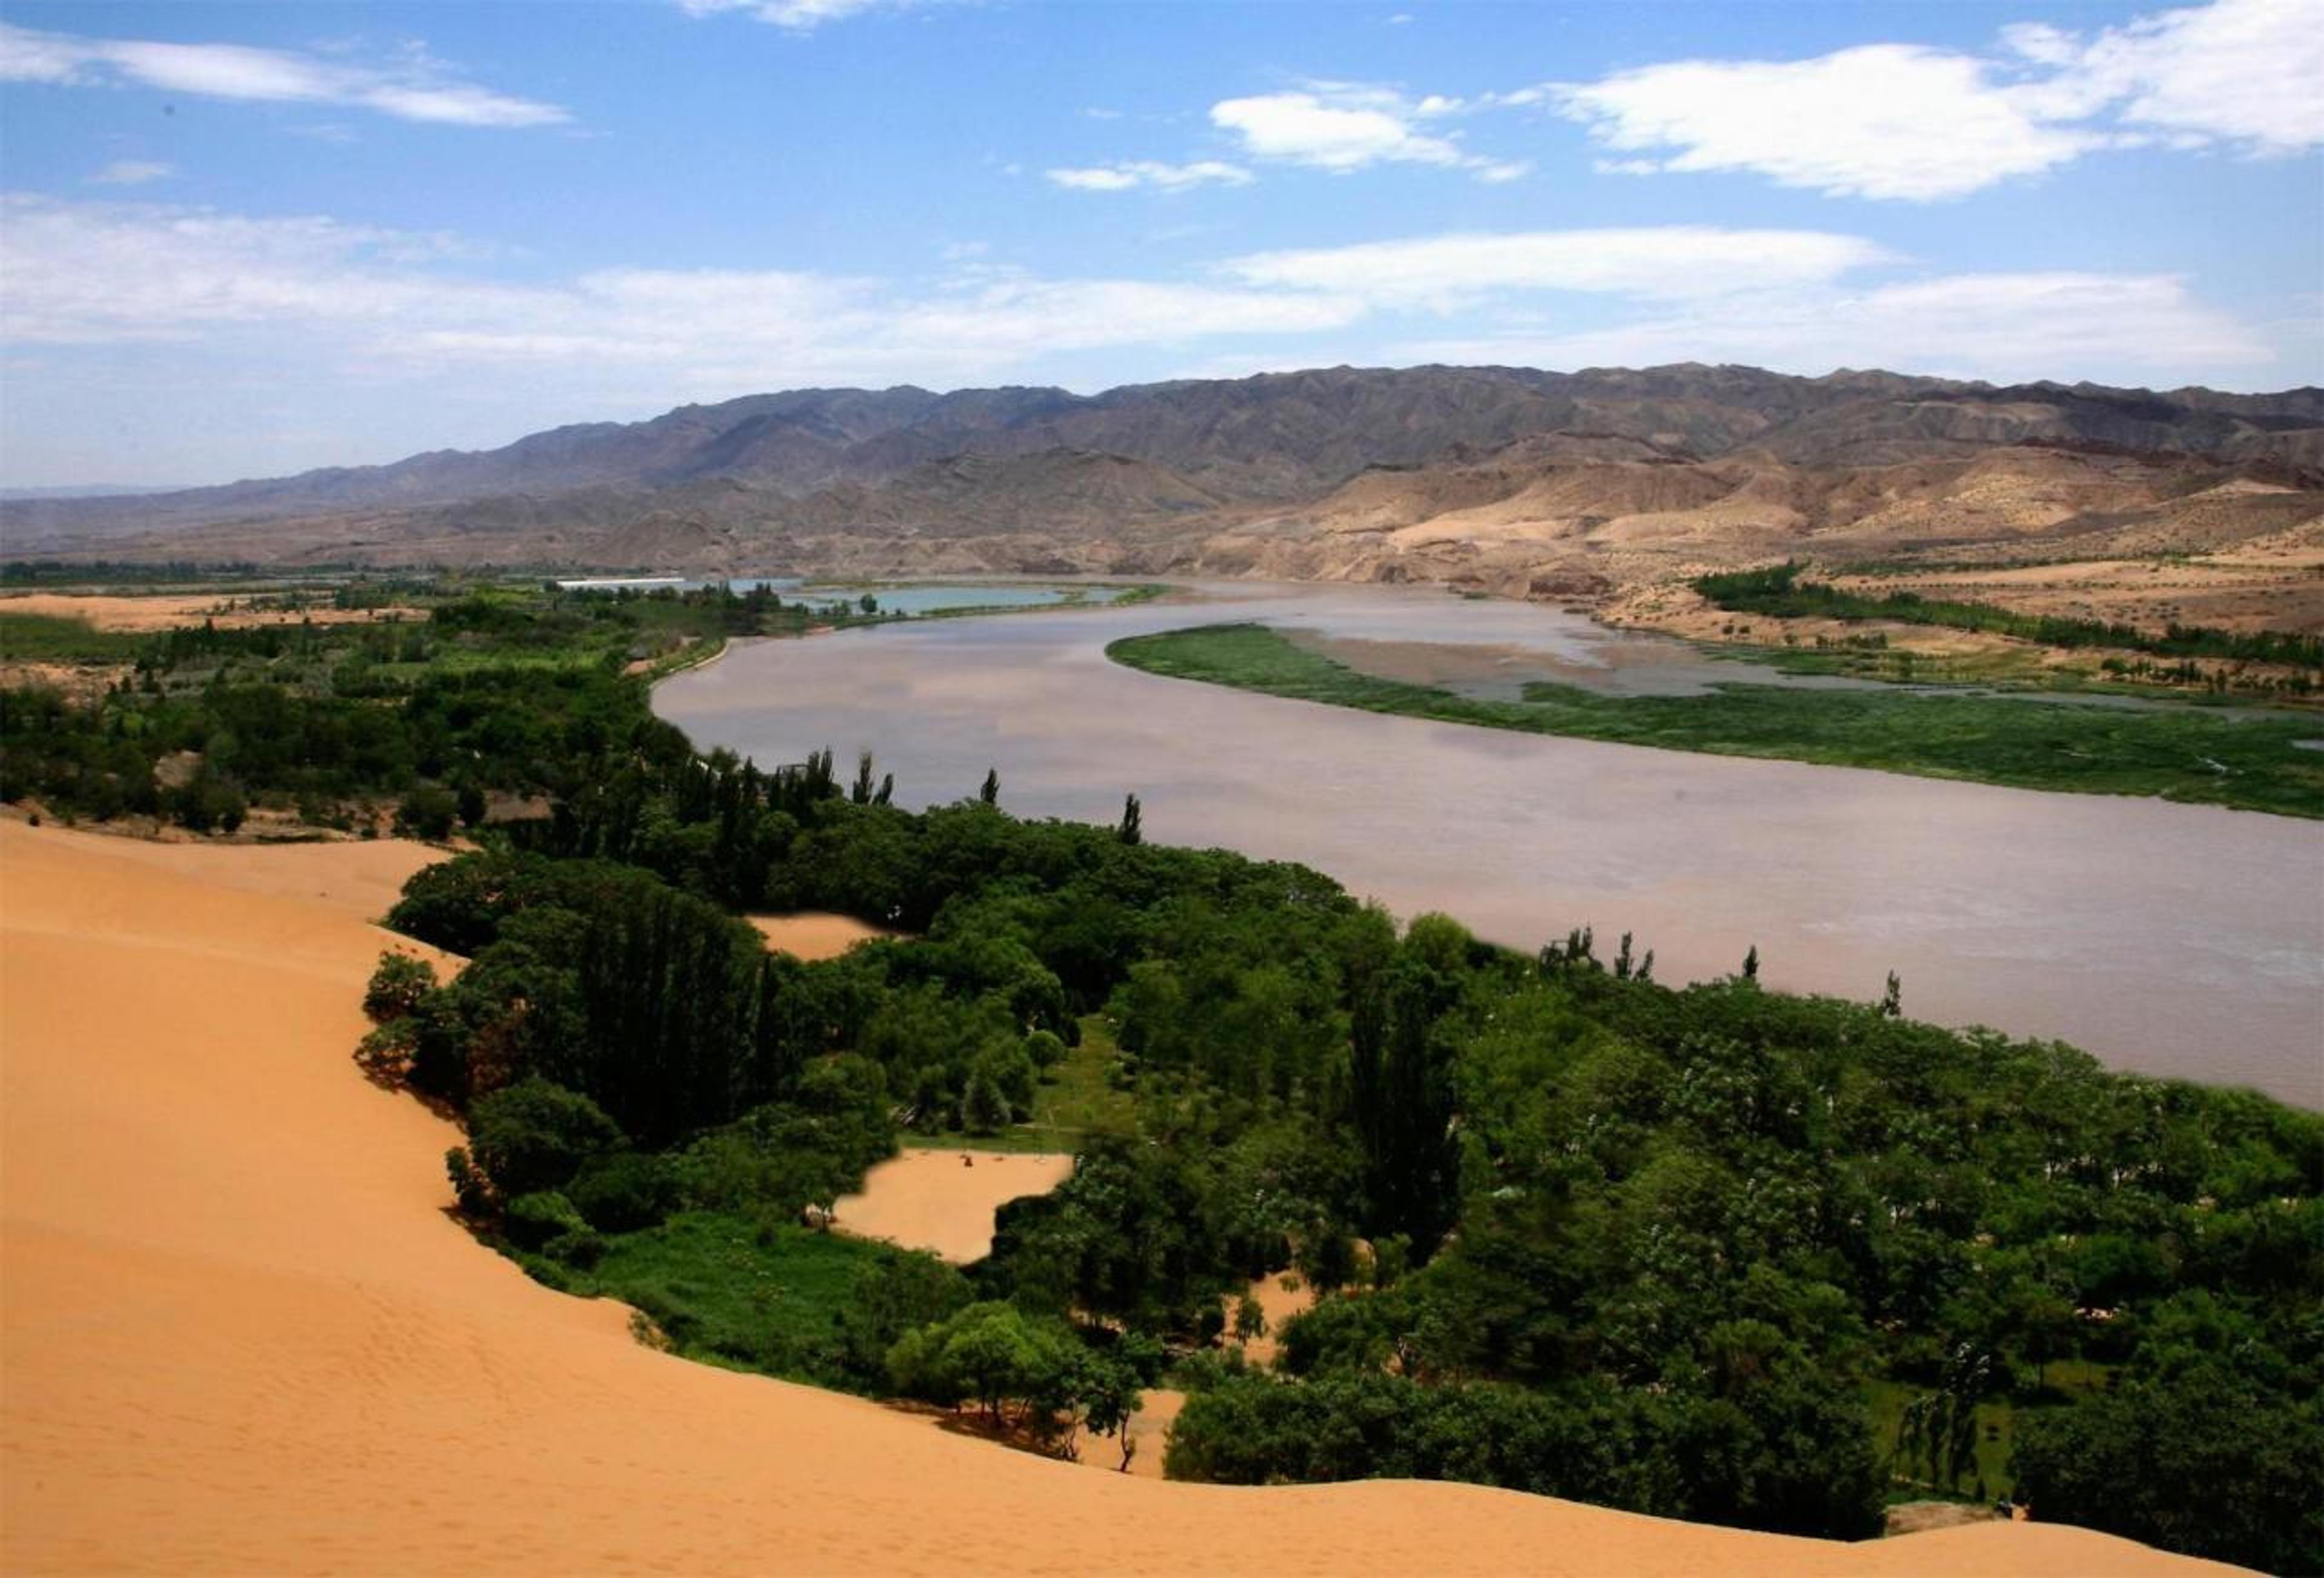 View of Shapotou desert southeast of Yinchuan